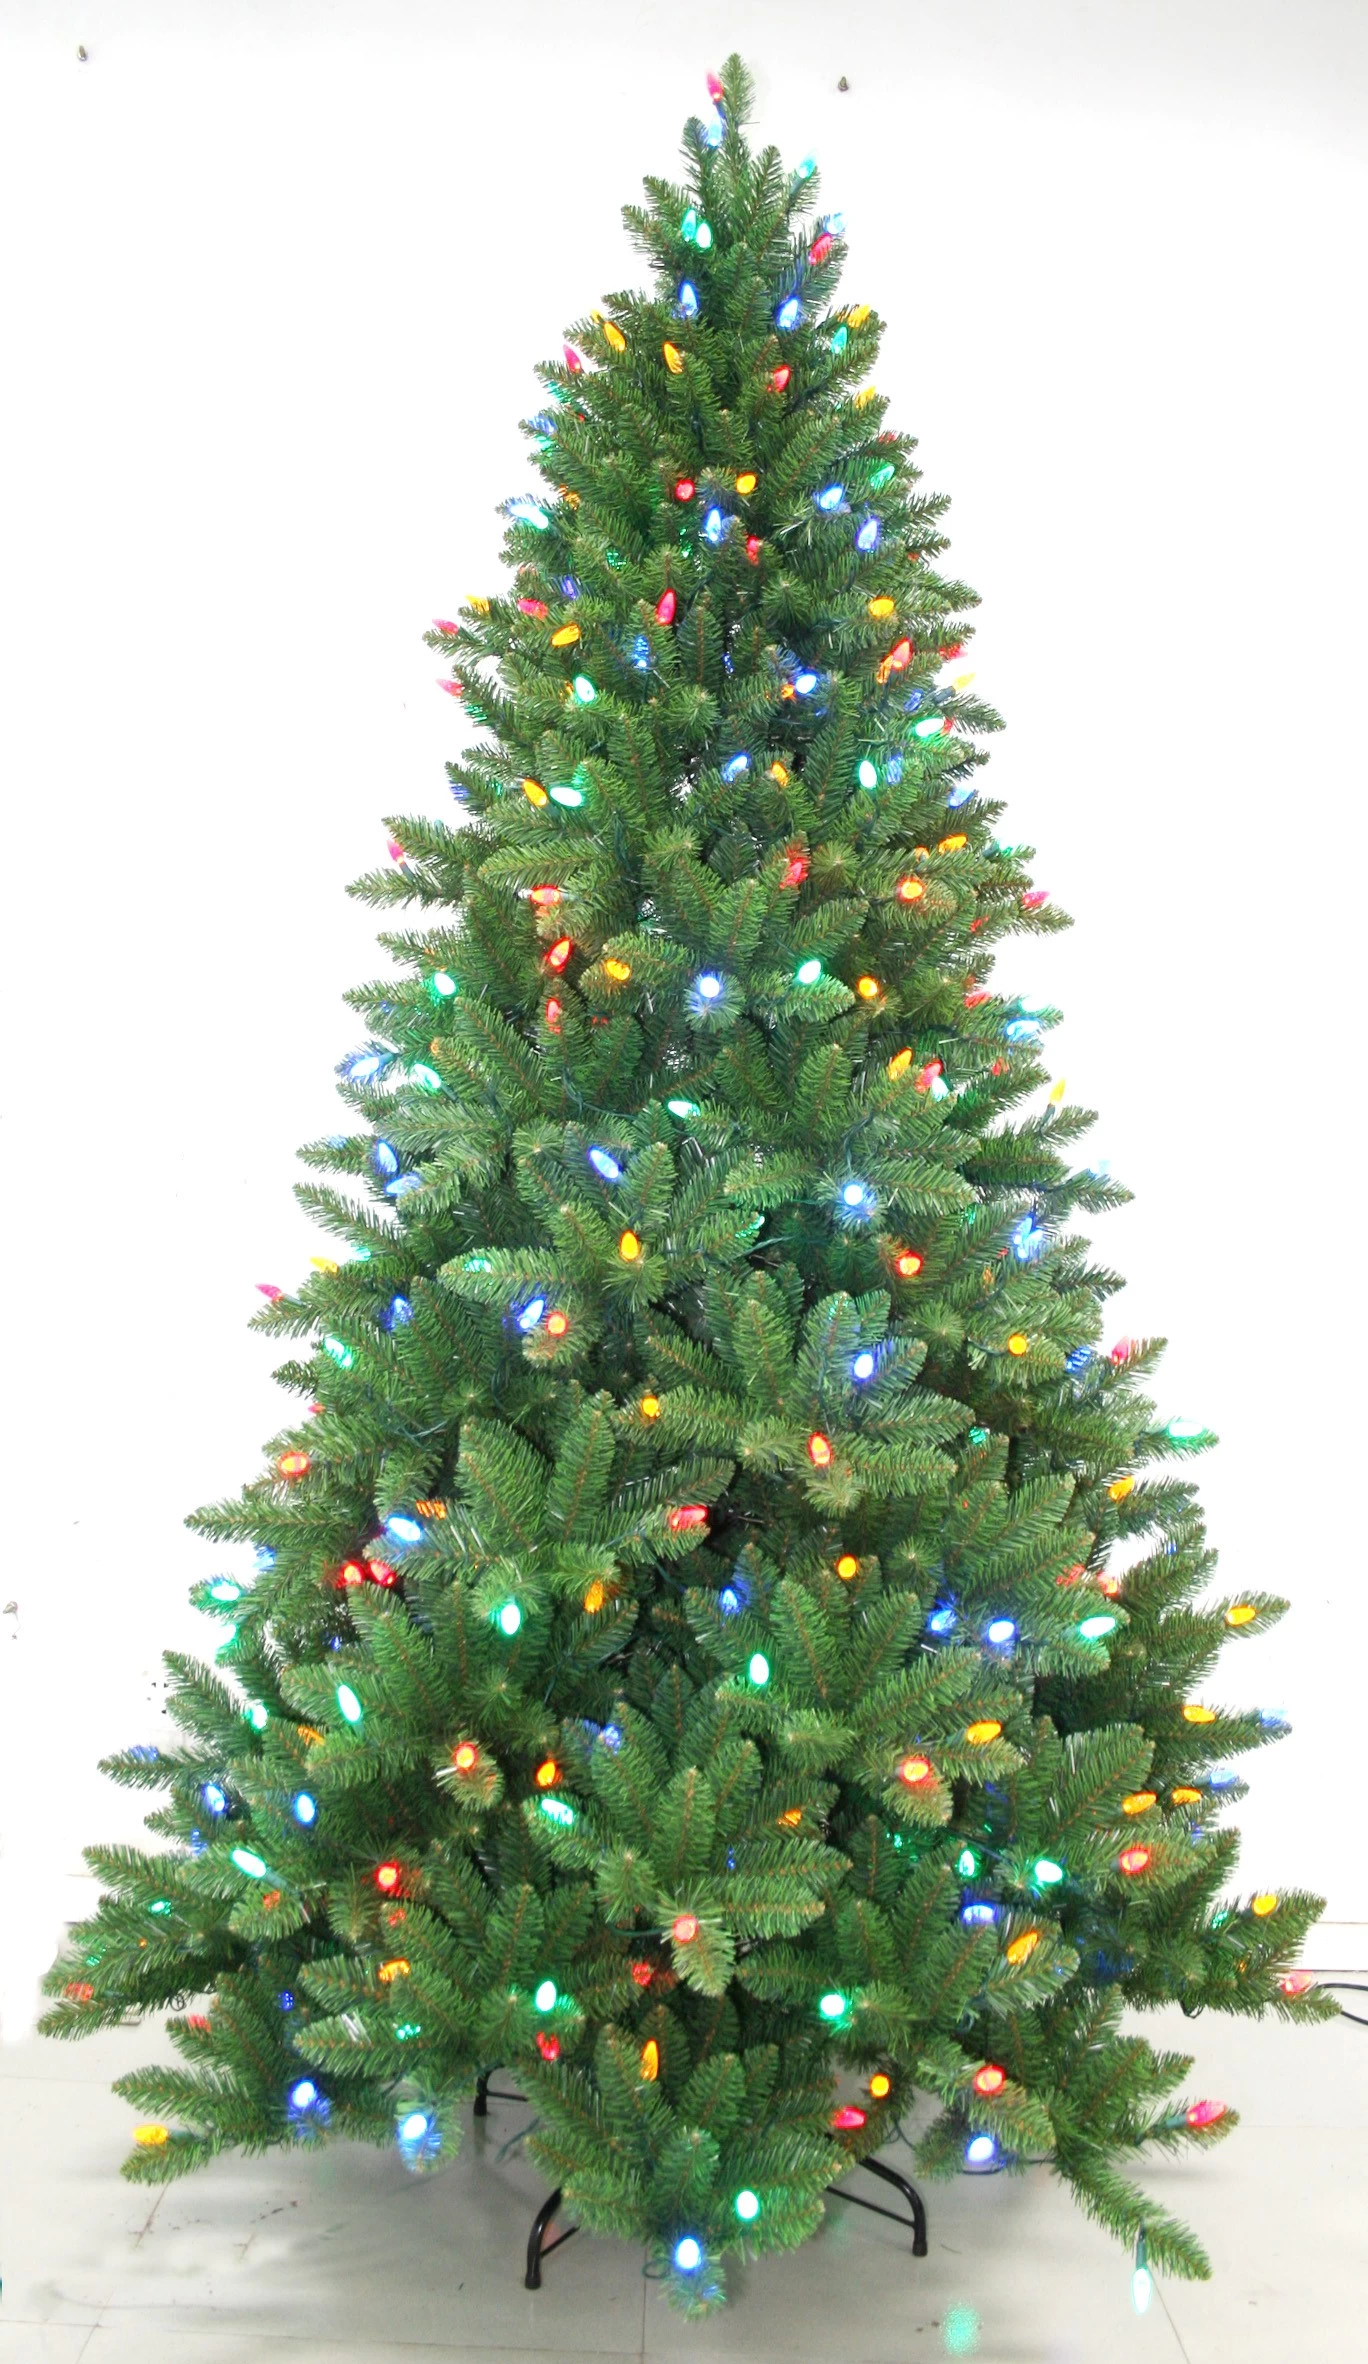 Chine usine prix mignon arbre de Noël décorations, feutre décoration sapin de Noël fabricant